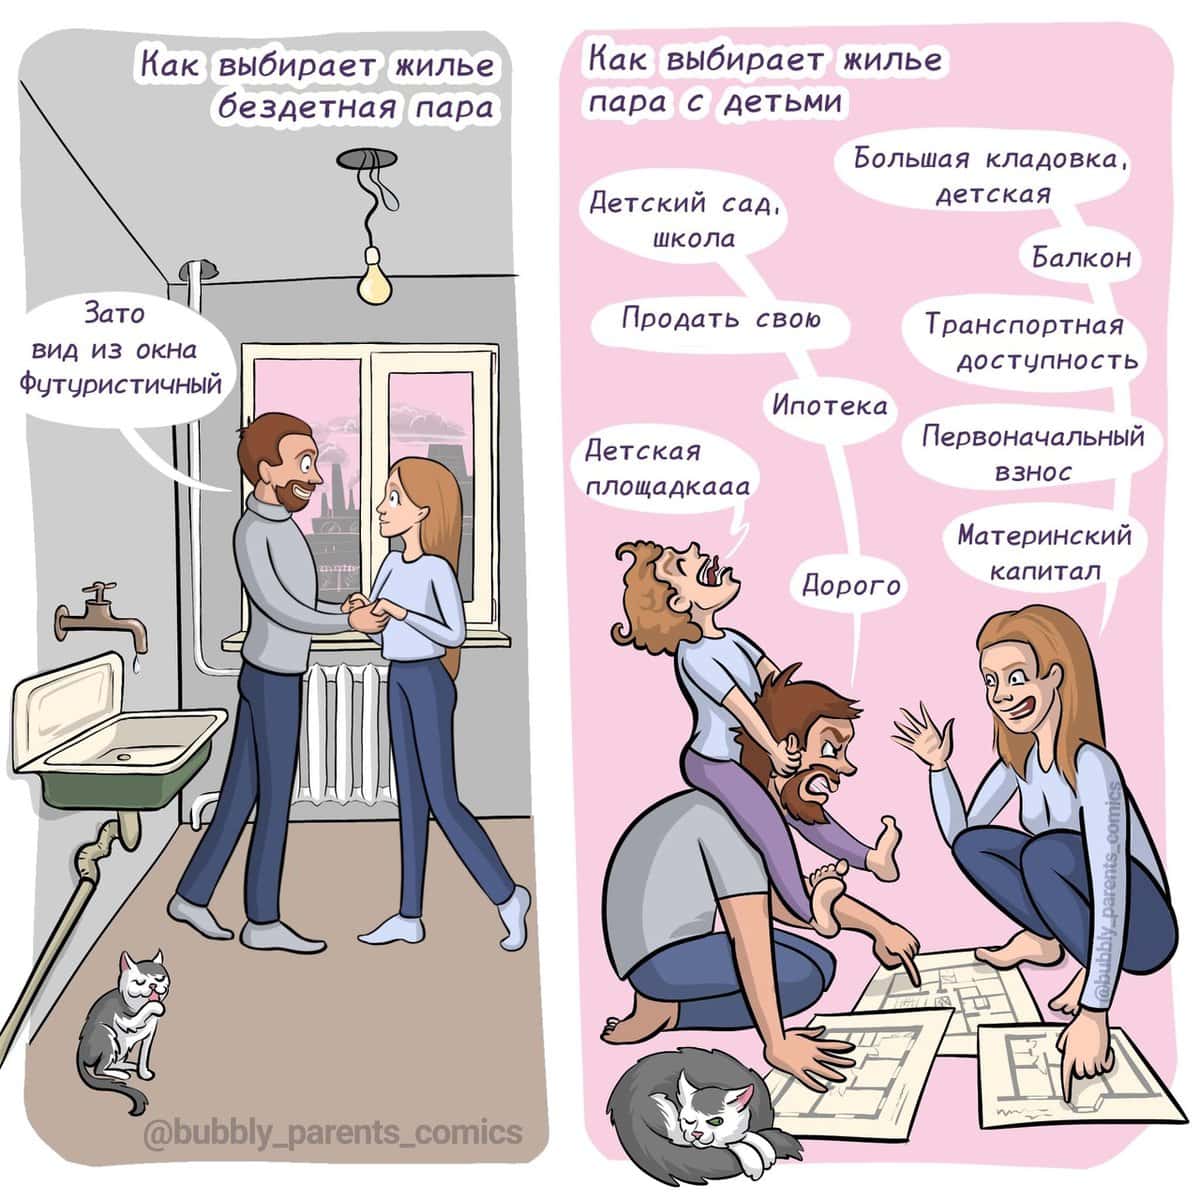 15 смешных комиксов от художницы из Екатеринбурга, которая делится своим «щщастьем материнства» в картинках 54